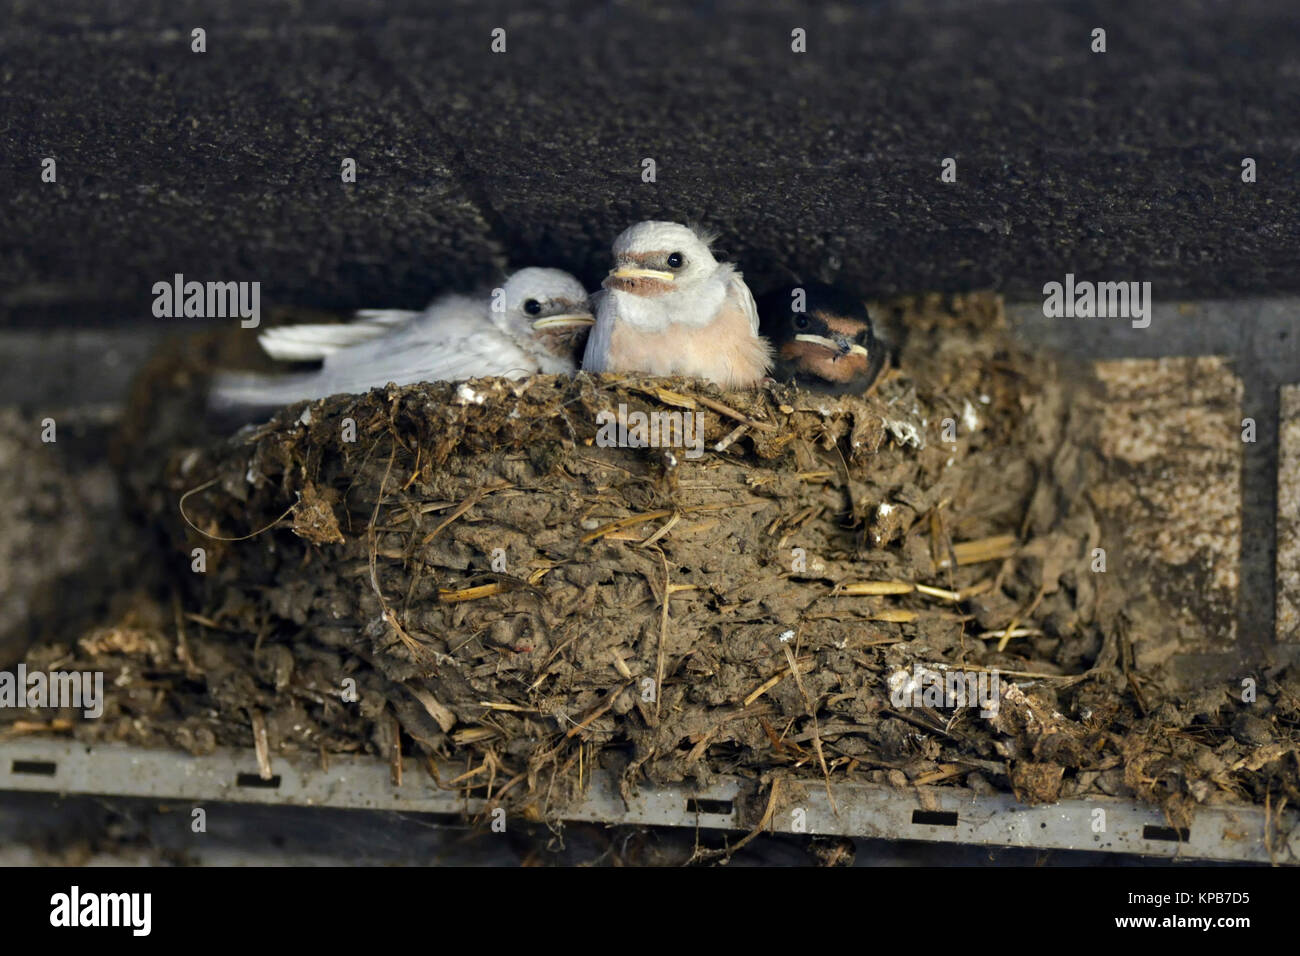 La Golondrina / Rauchschwalben ( Hirundo rustica ), pollitos en el nido, dos de ellas con un raro defecto genético, plumaje blanco, leucistic, leucism, Europa. Foto de stock